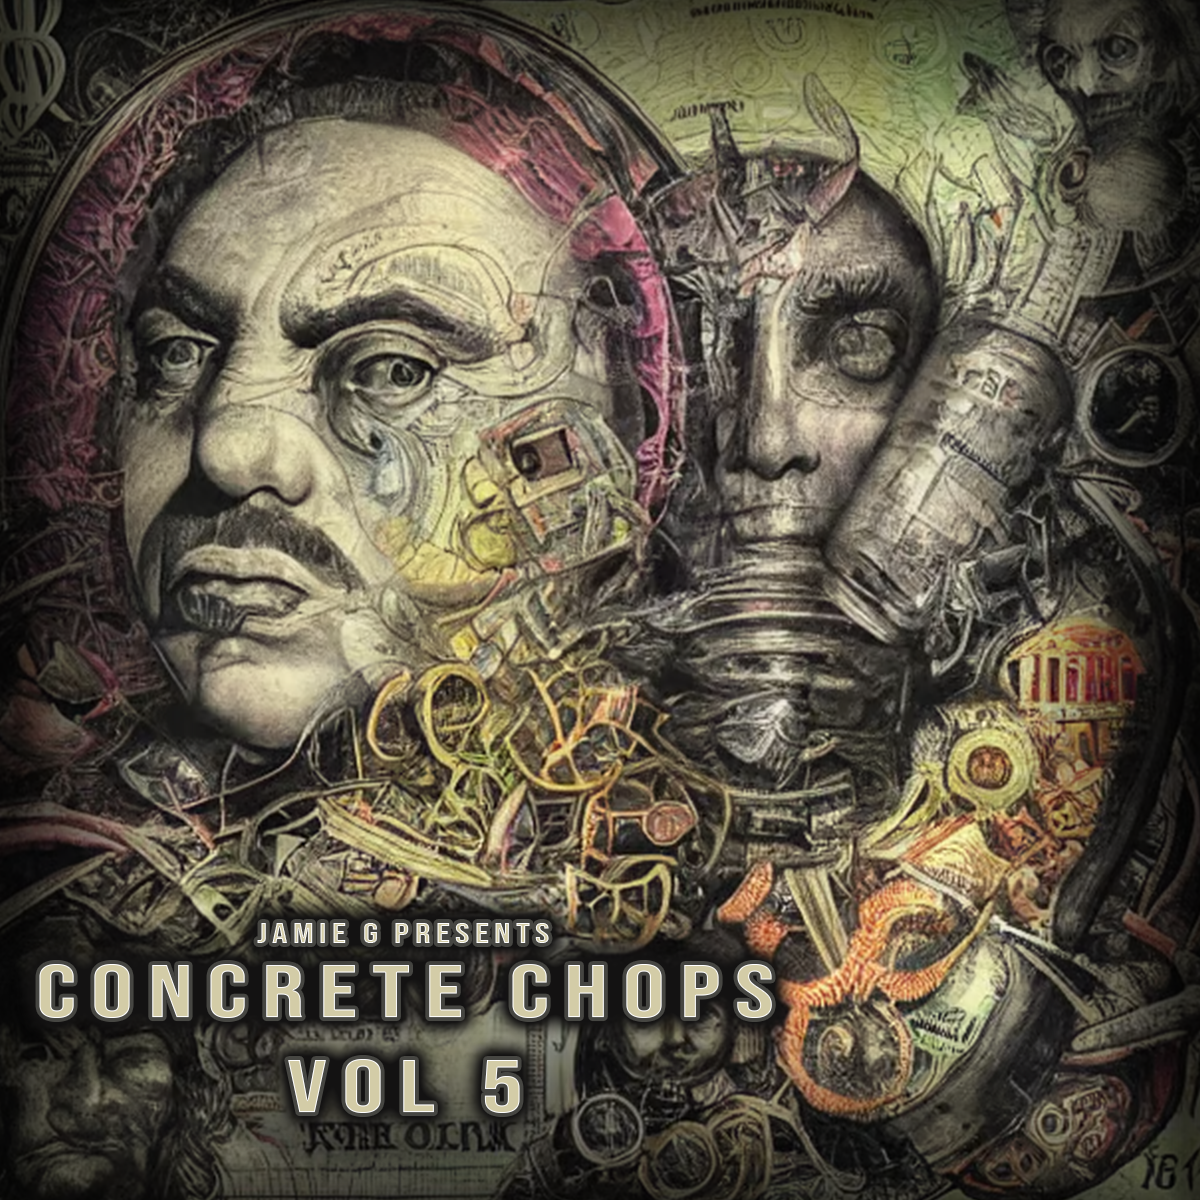 Concrete Chops Vol 5